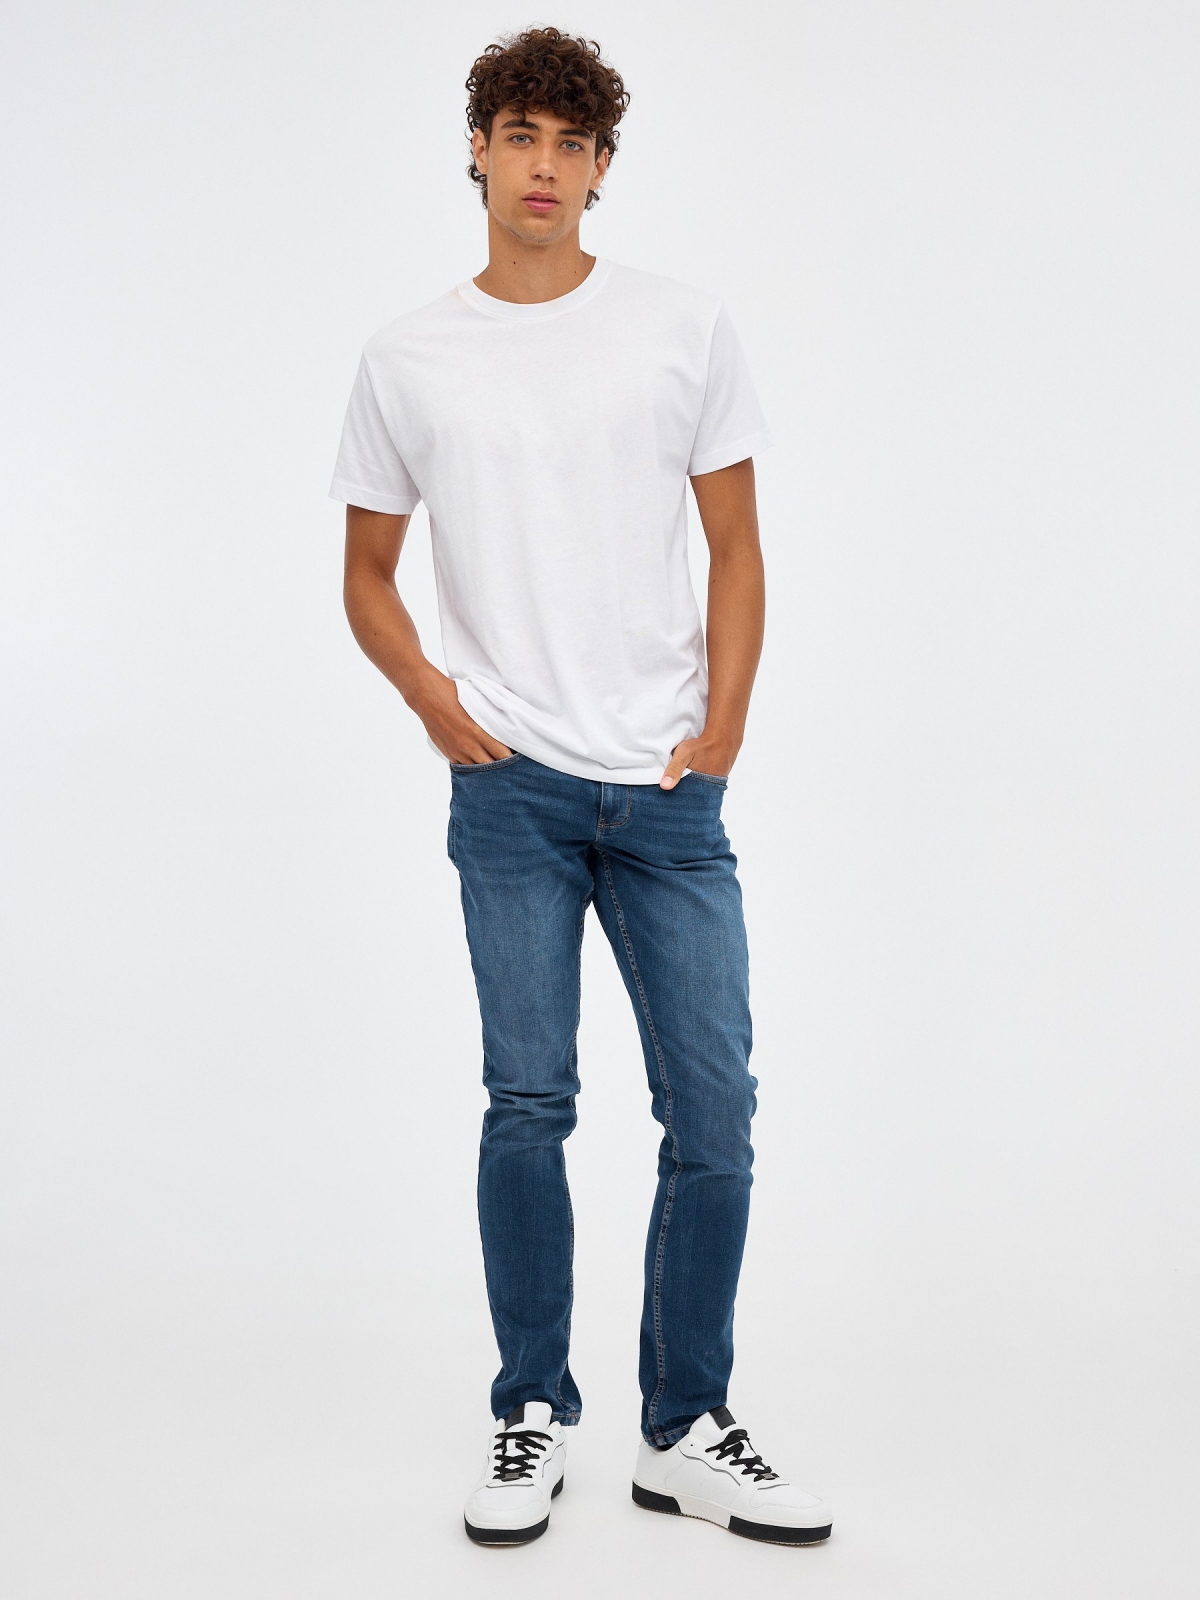 Mid rise slim denim jeans blue front view